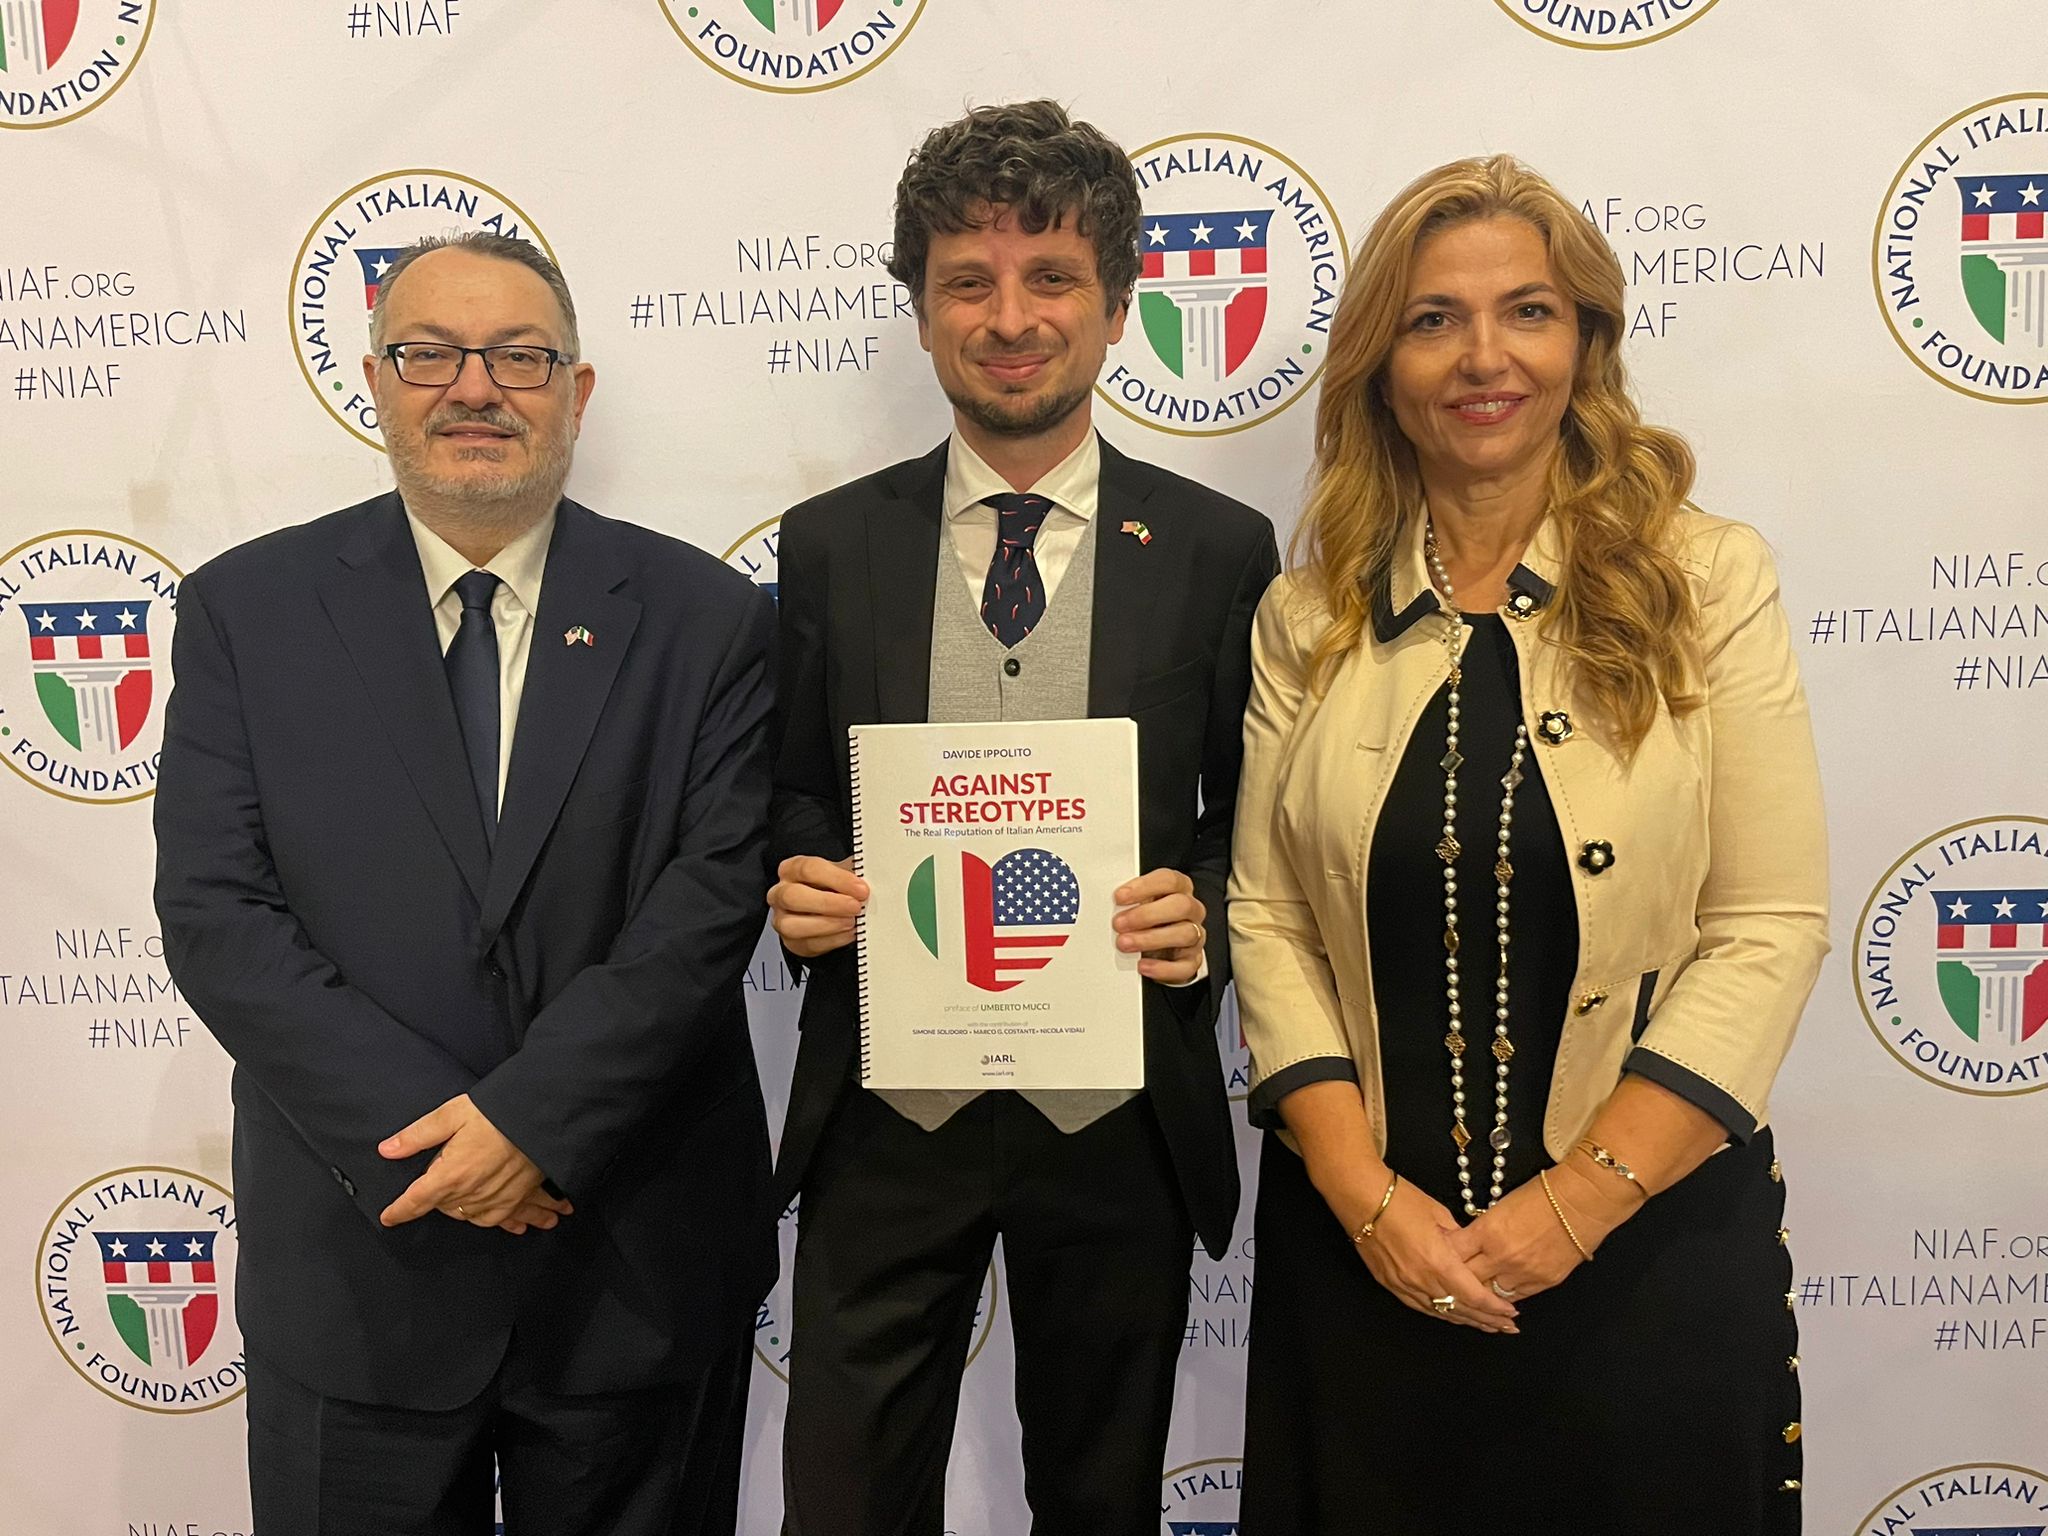 La rivincita reputazionale degli italoamericani arriva al gala del NIAF con l’ultimo report IARL 